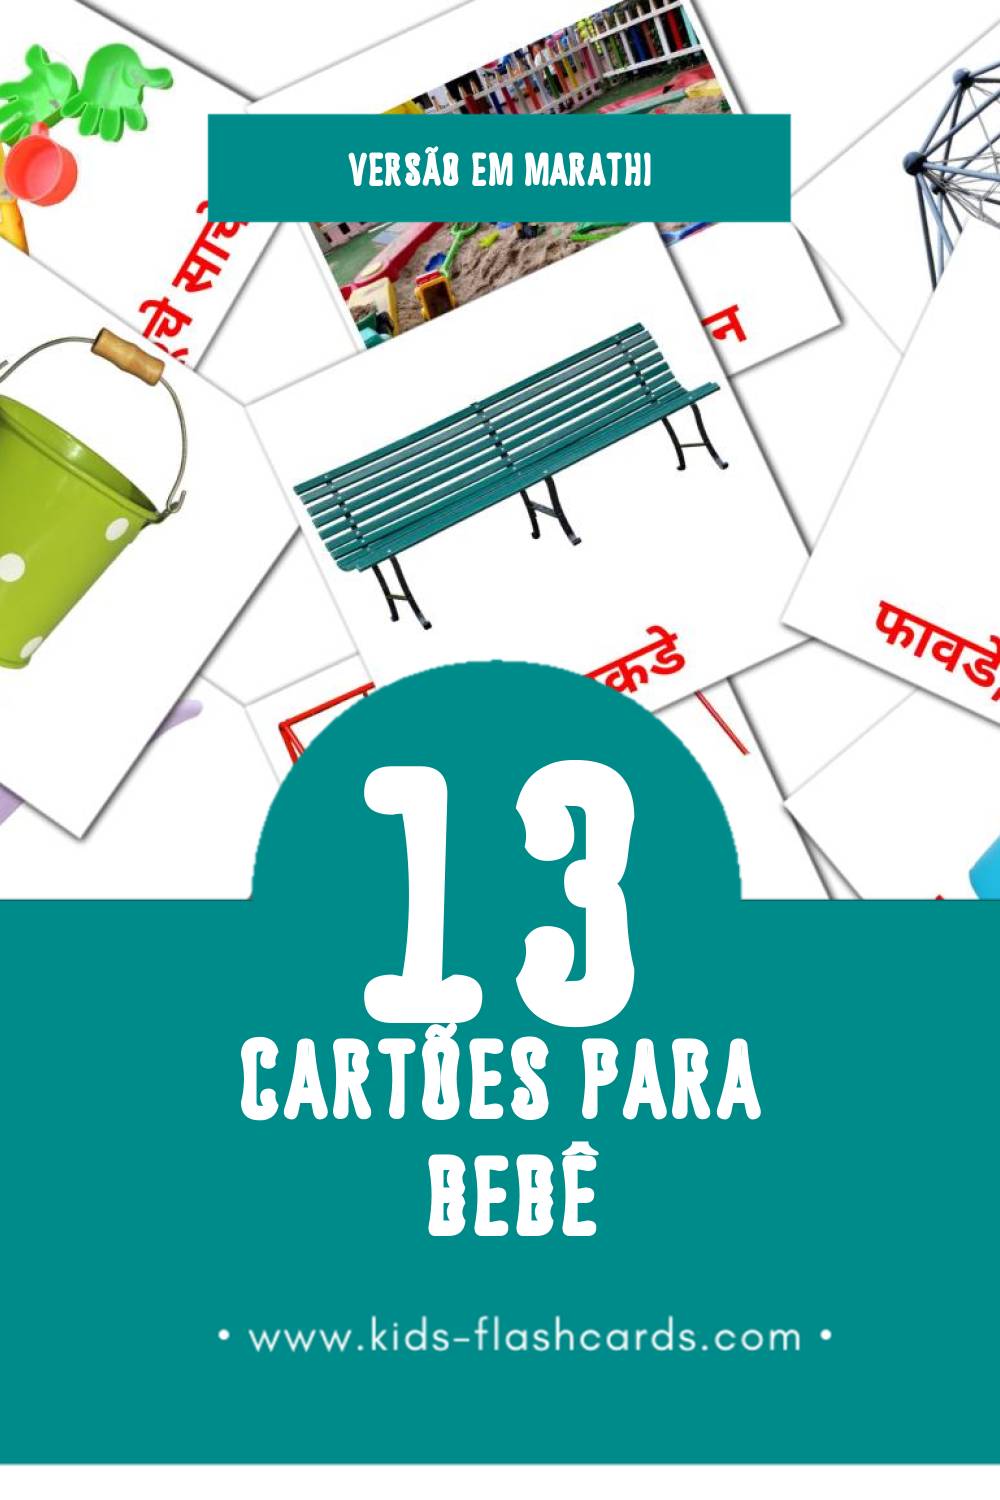 Flashcards de बाळा  Visuais para Toddlers (13 cartões em Marathi)